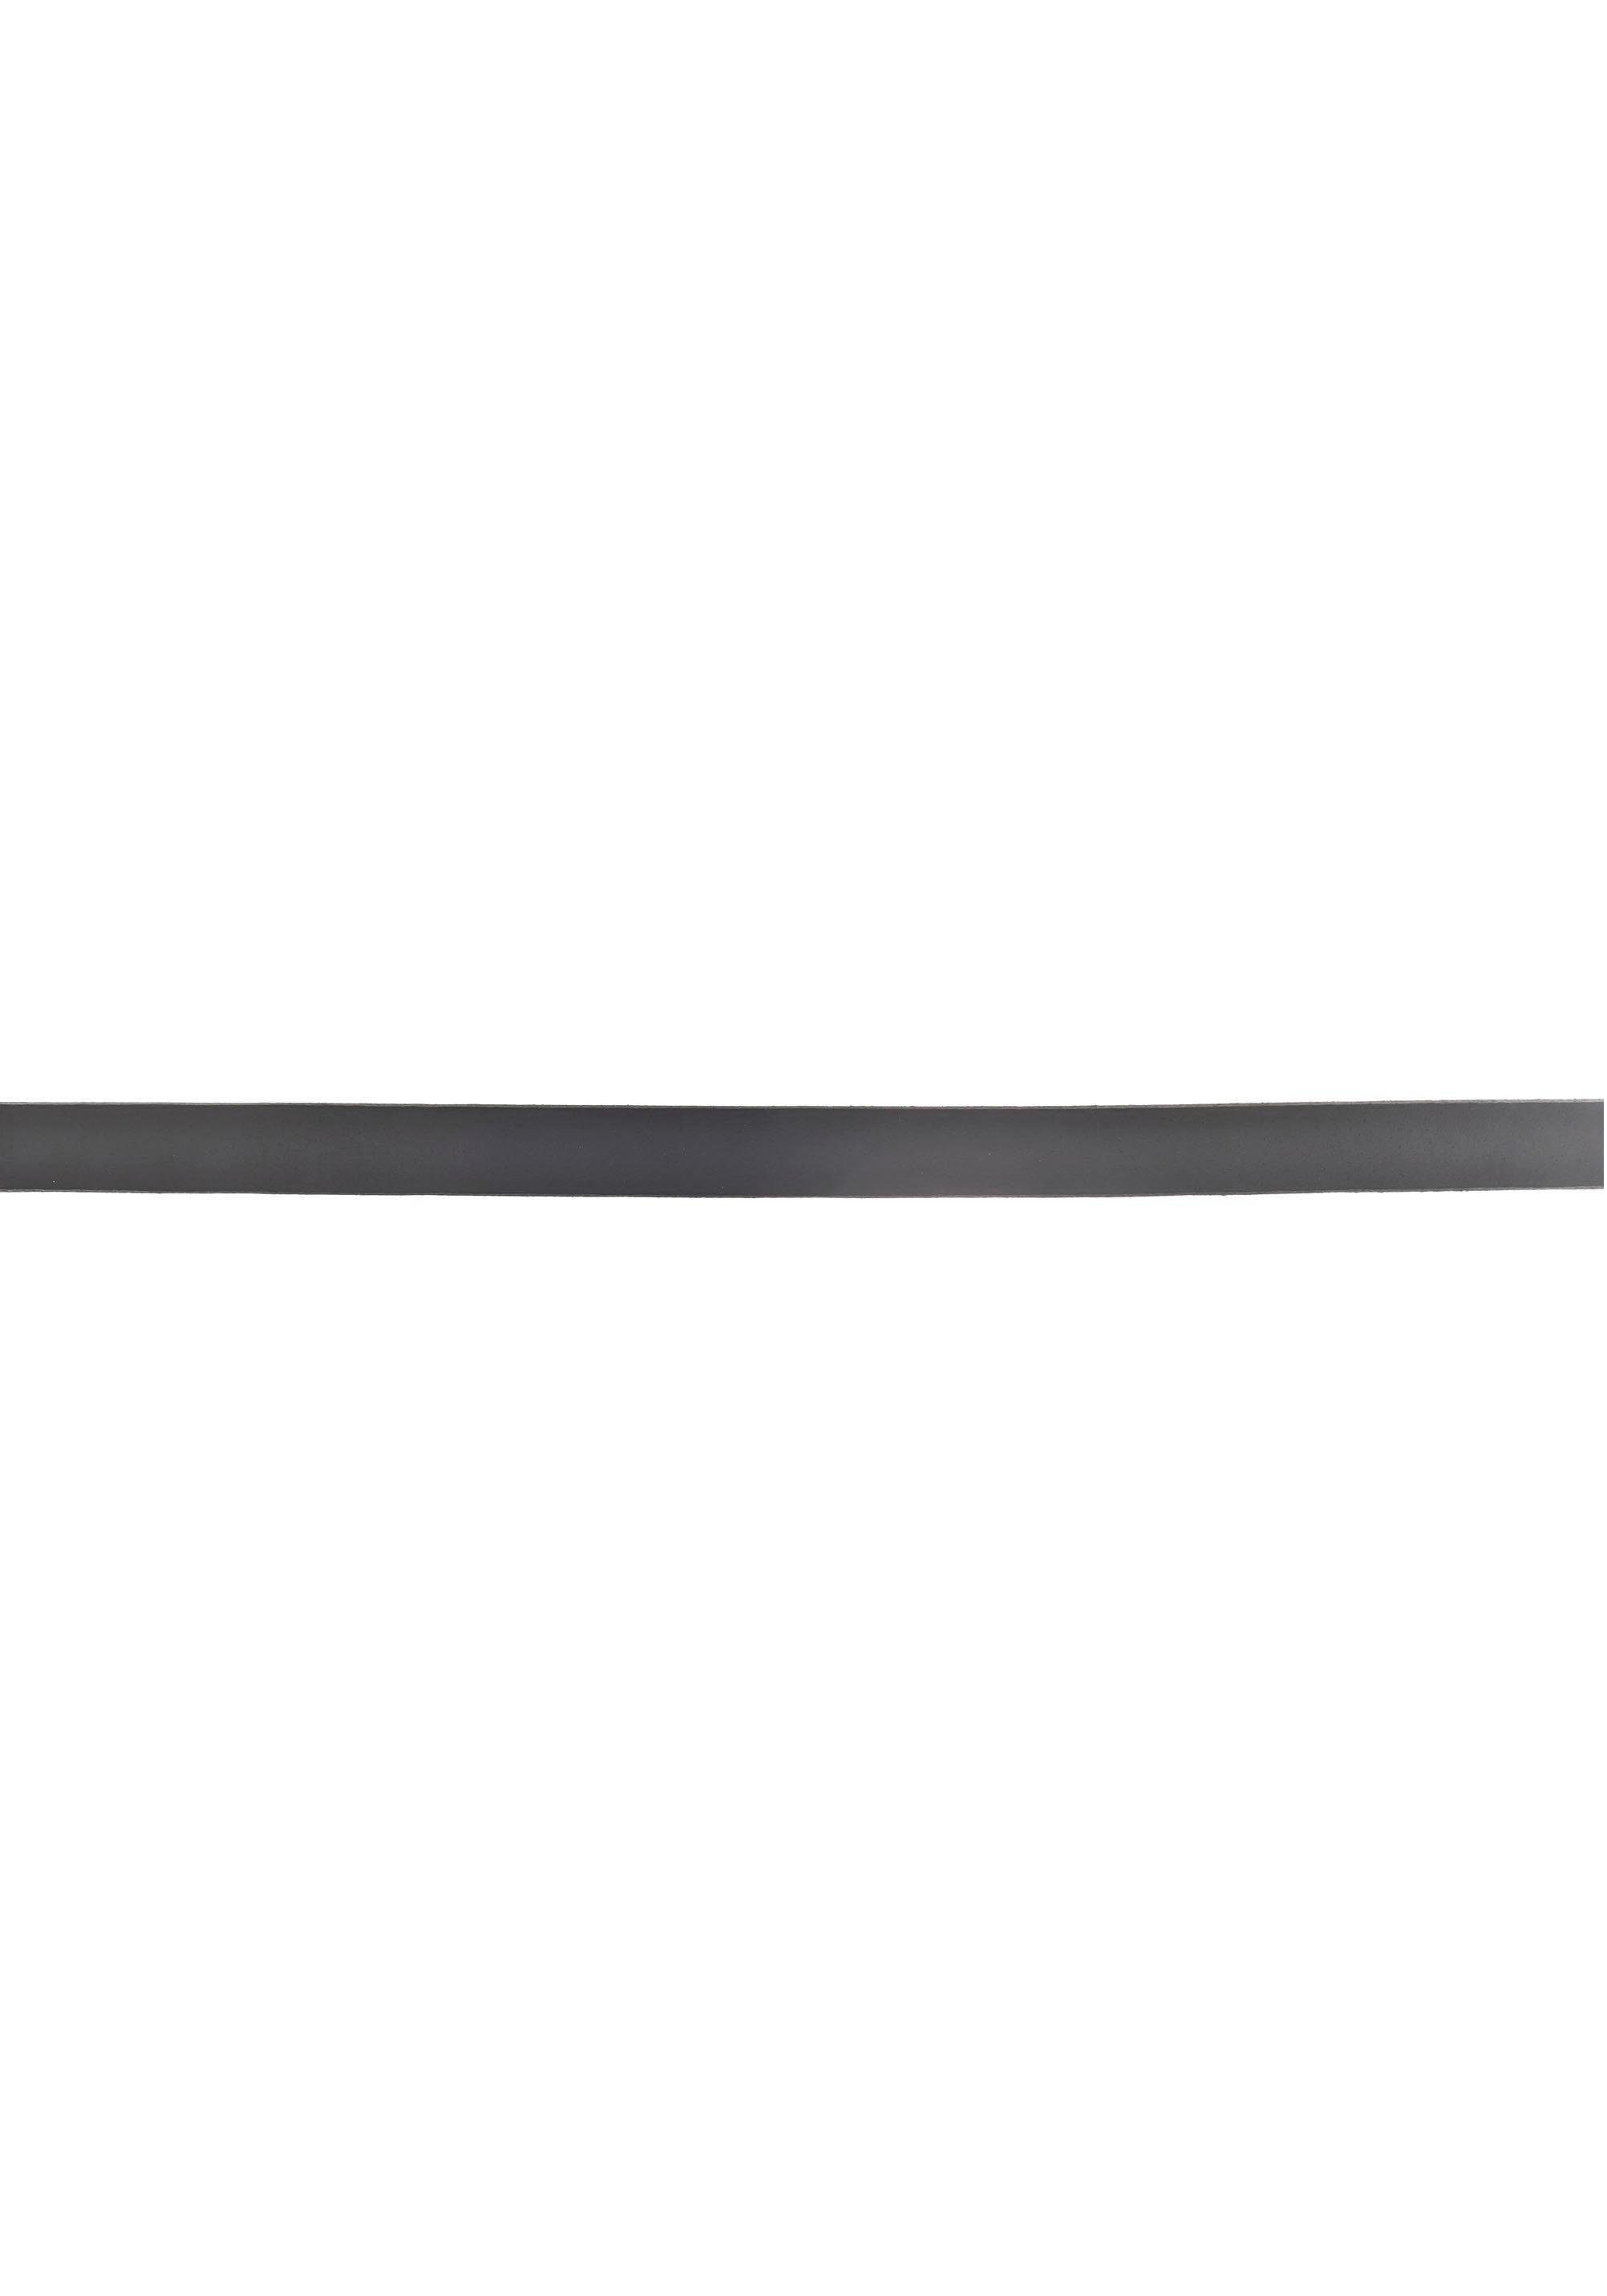 Vollrindleder schwarz mit Vanzetti hoher Ledergürtel Farbbrillanz